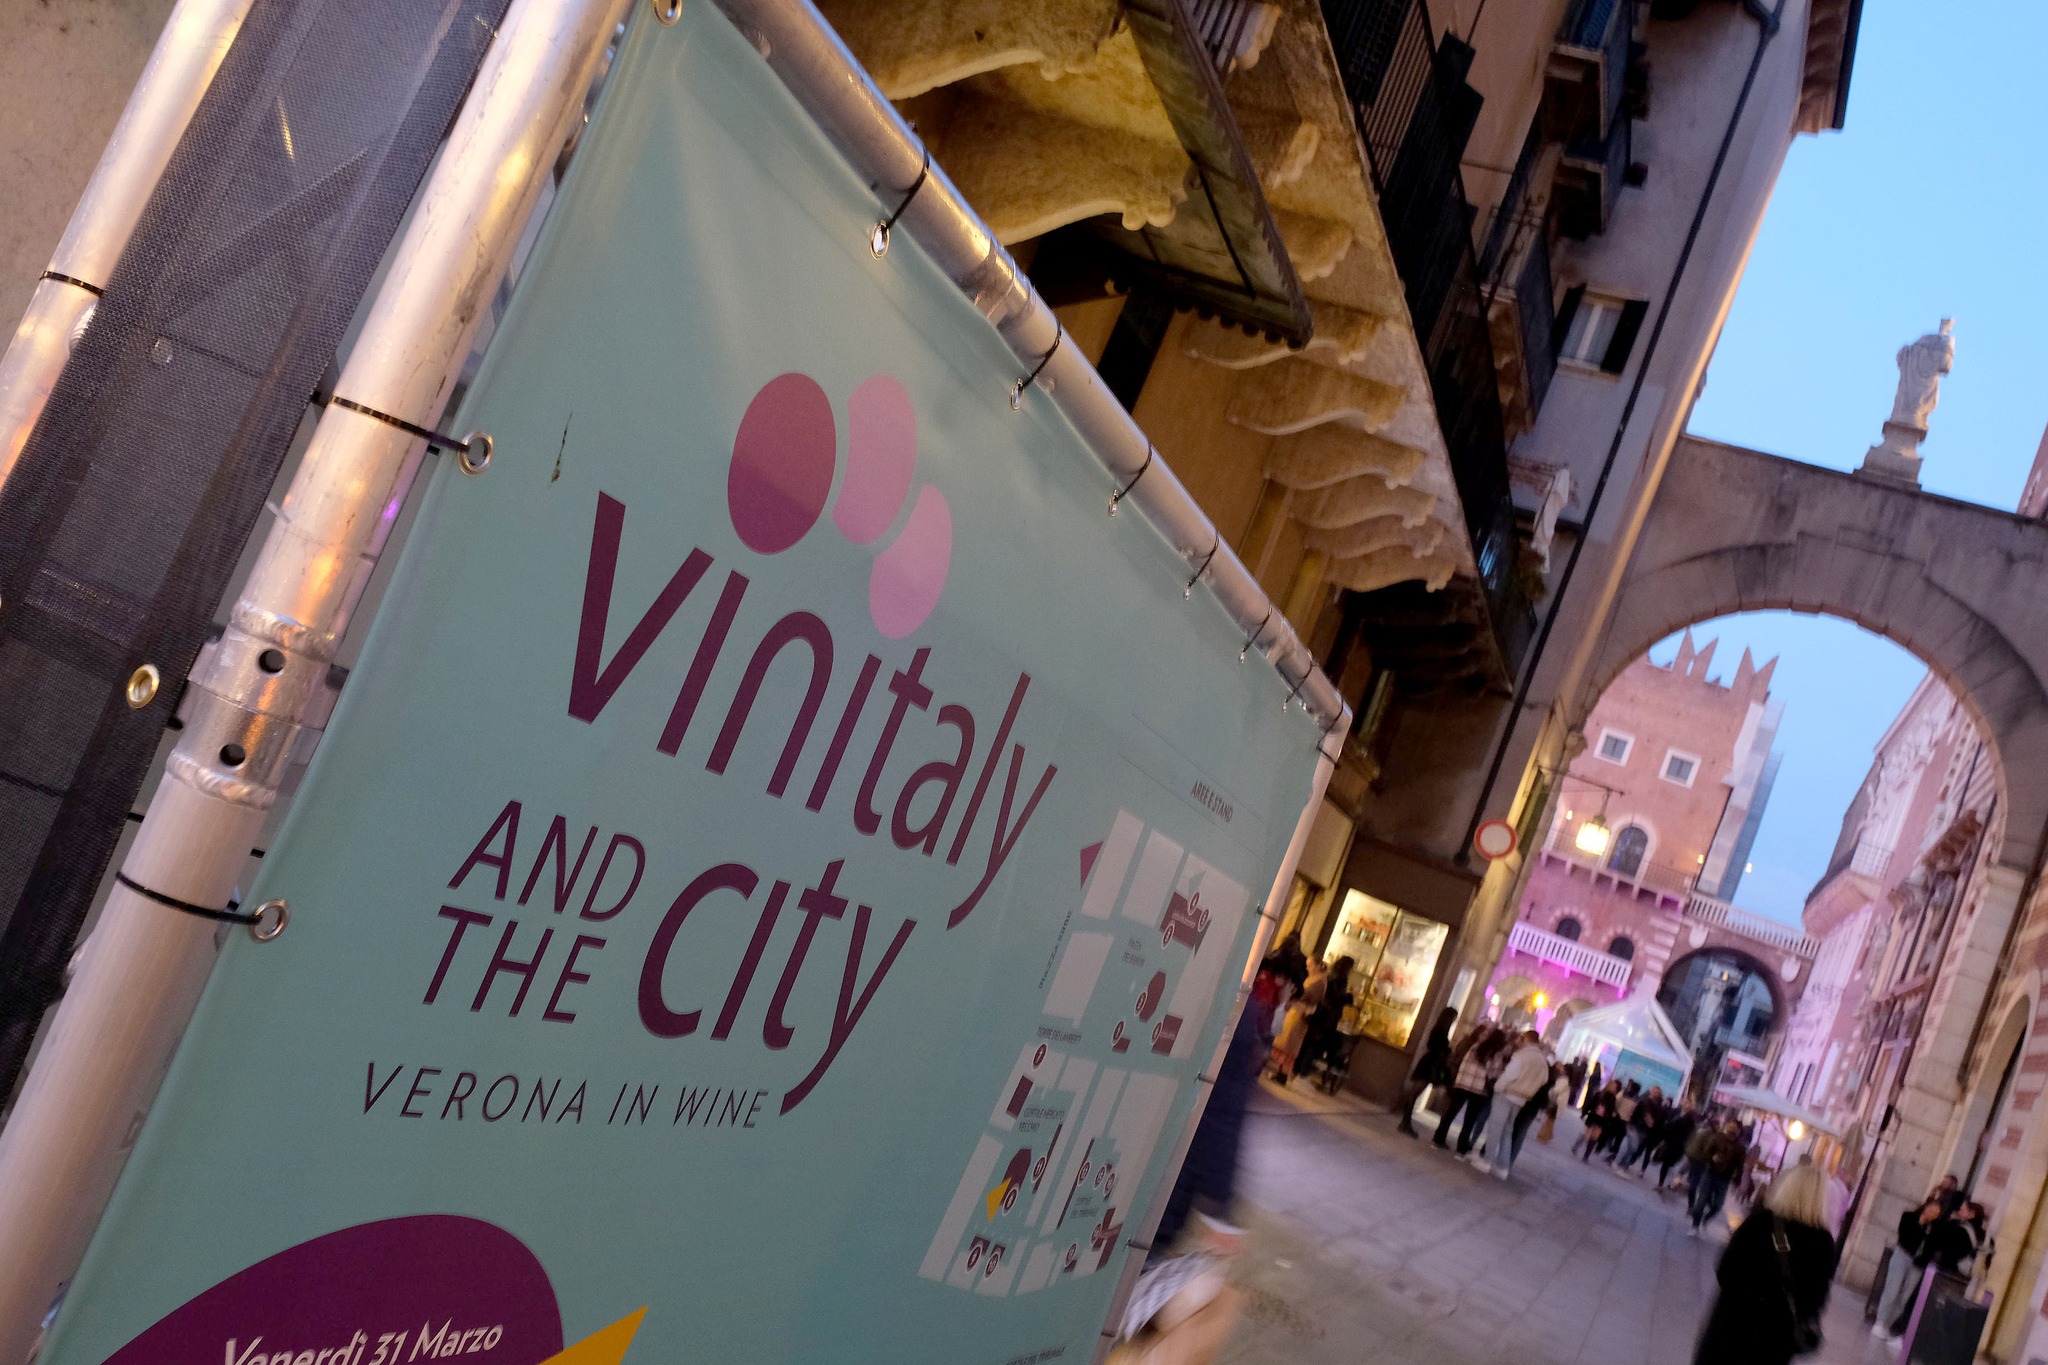 Vinitaly & the City, ecco gli eventi di oggi